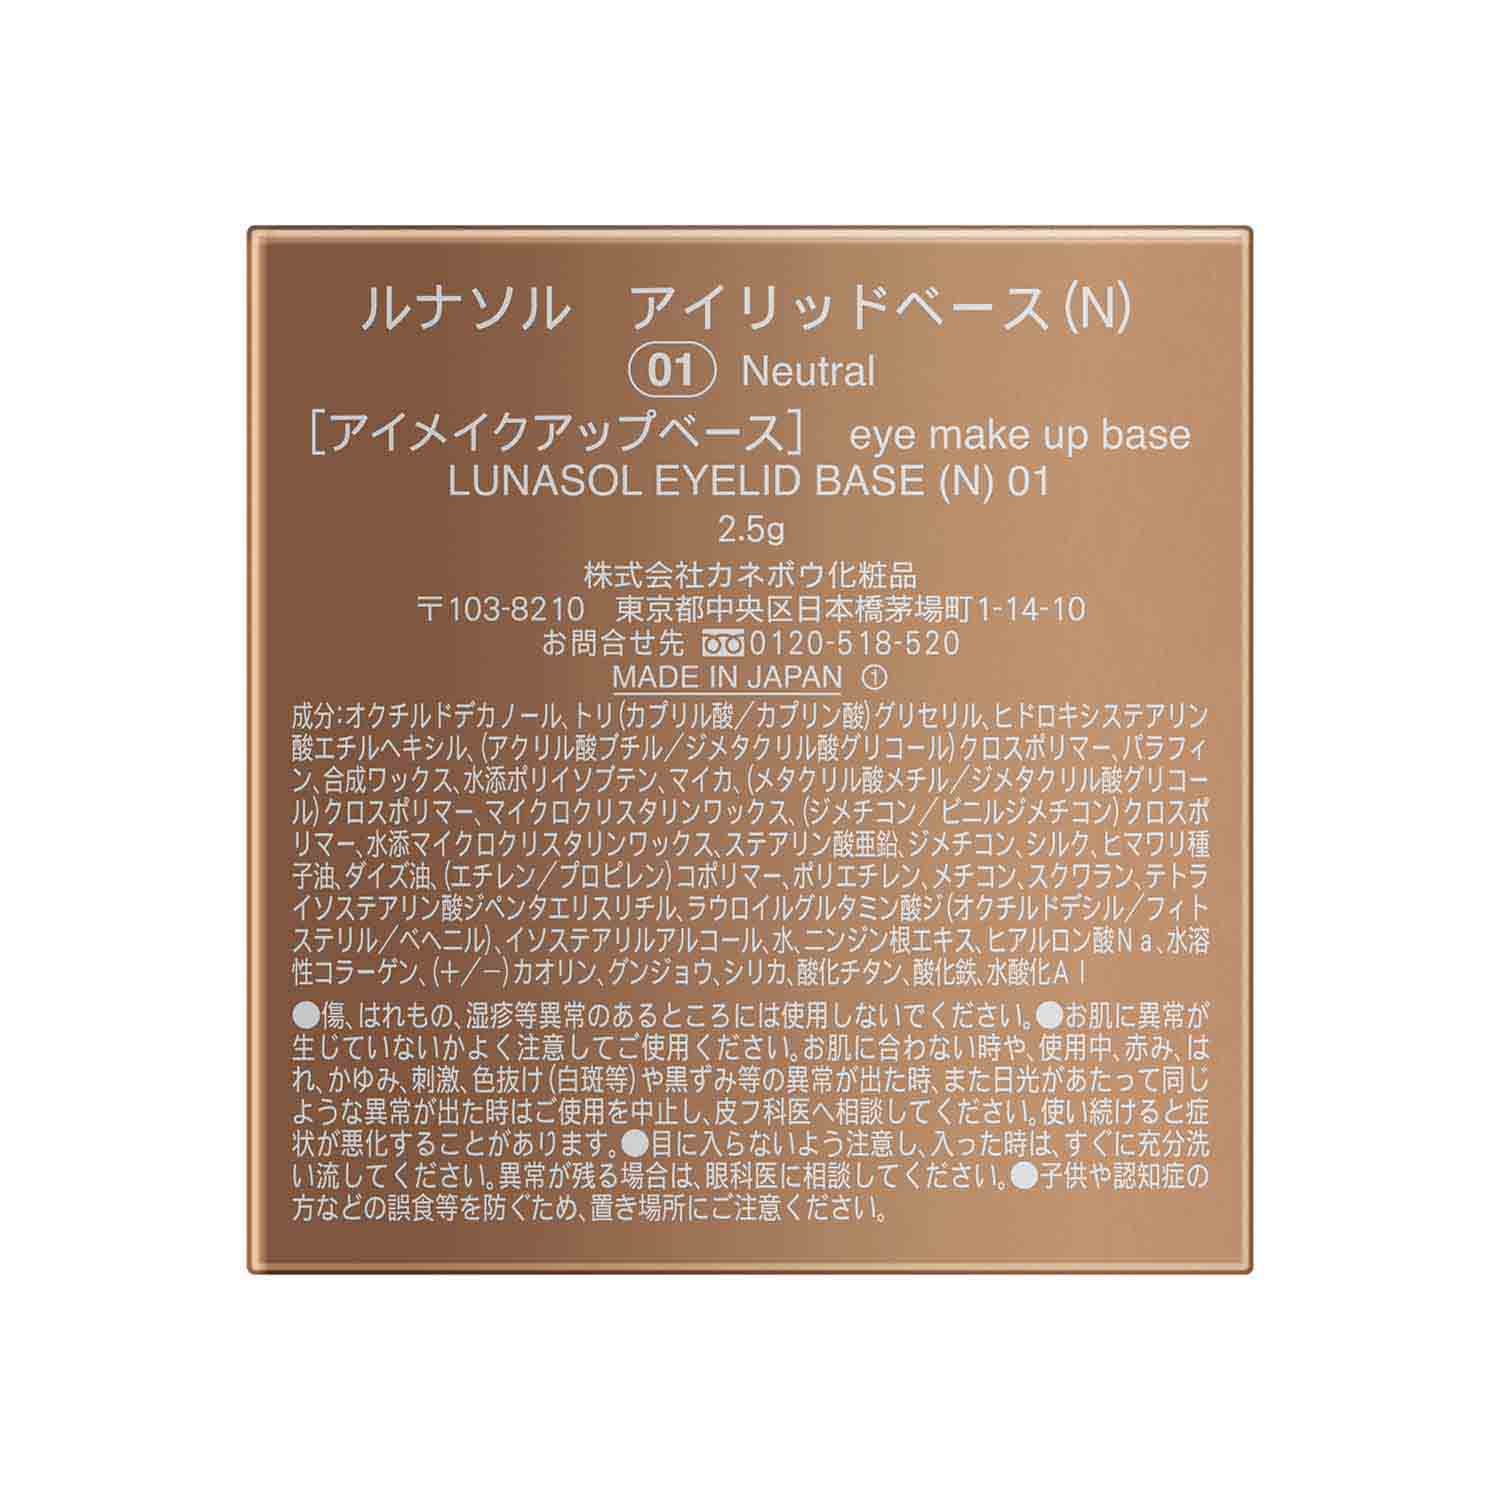 Lunasol Eye Lid Base (N) - Ichiban Mart